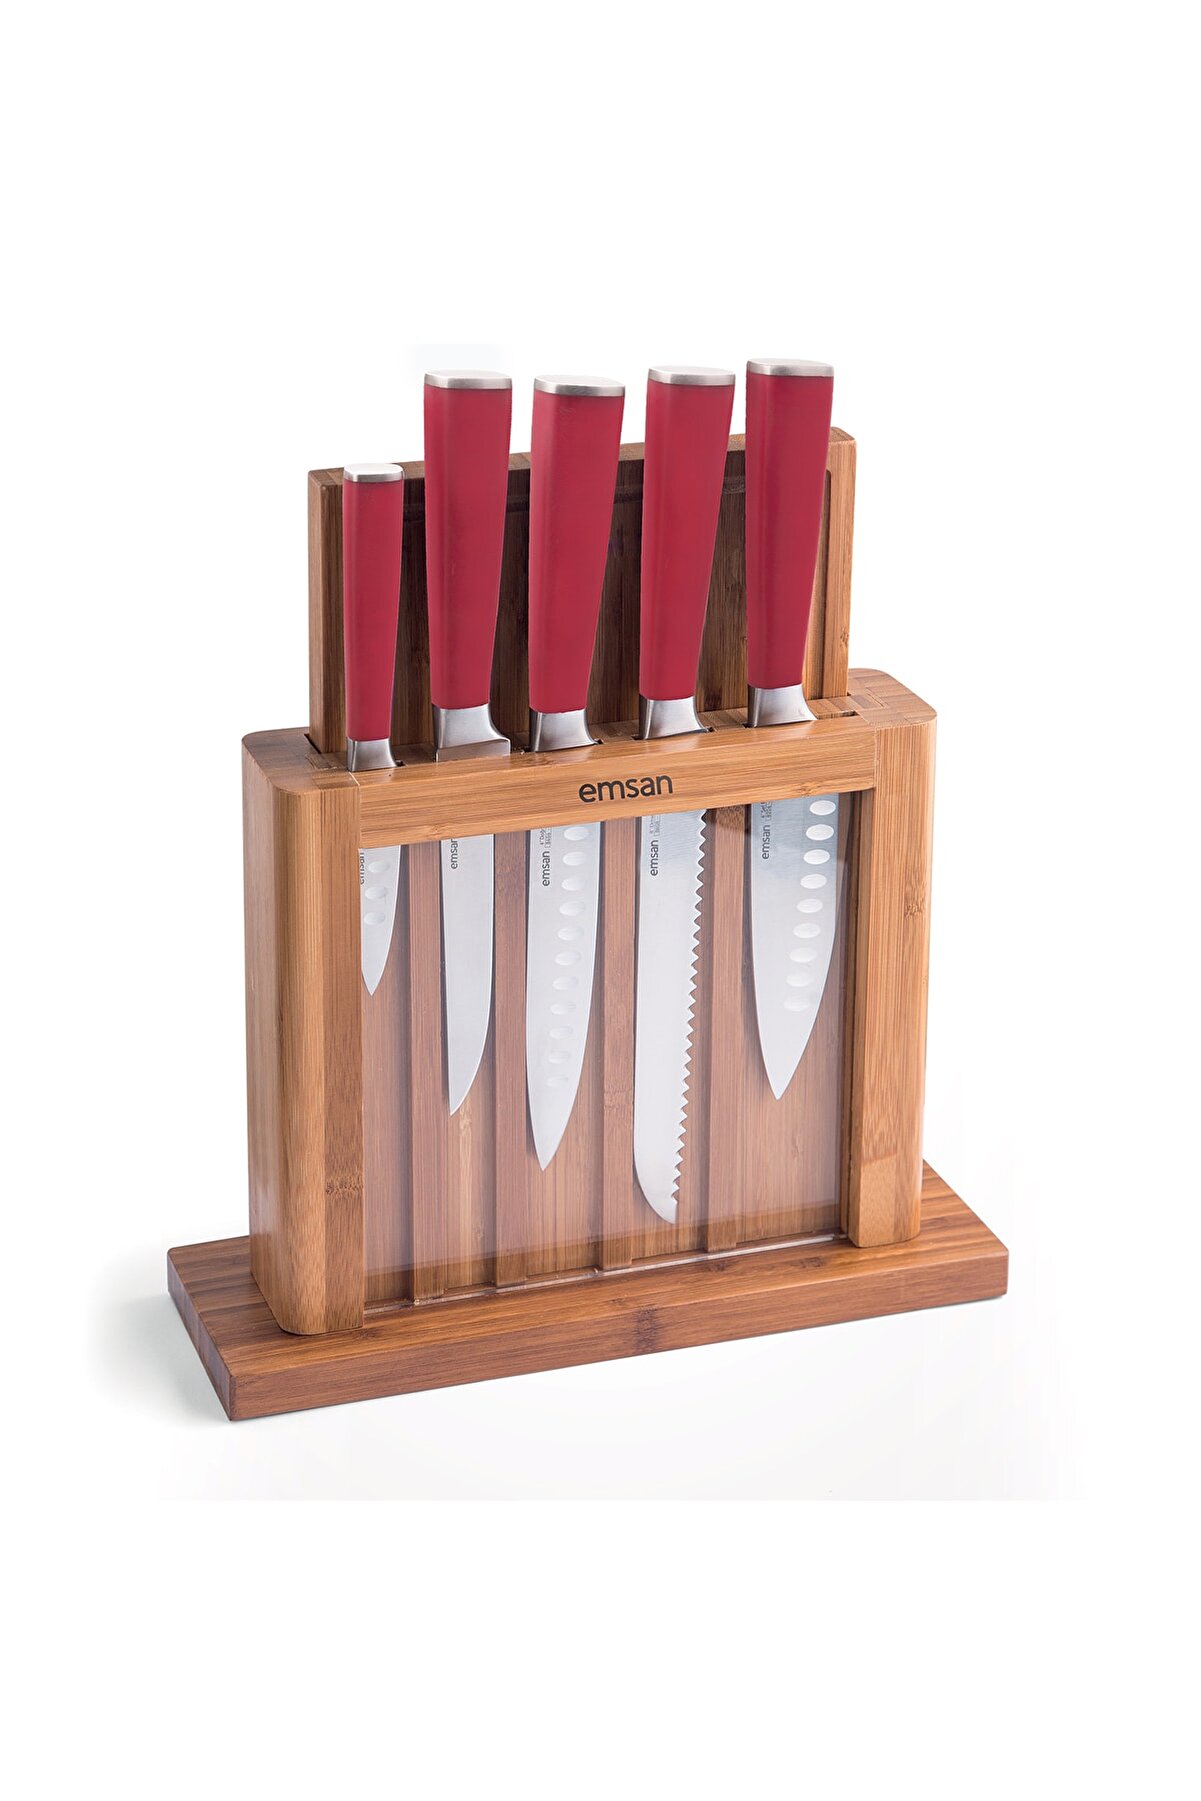 ست چاقوی آشپزخانه 7 پارچه امسان مدل Emsan Matriks Kirmizi 